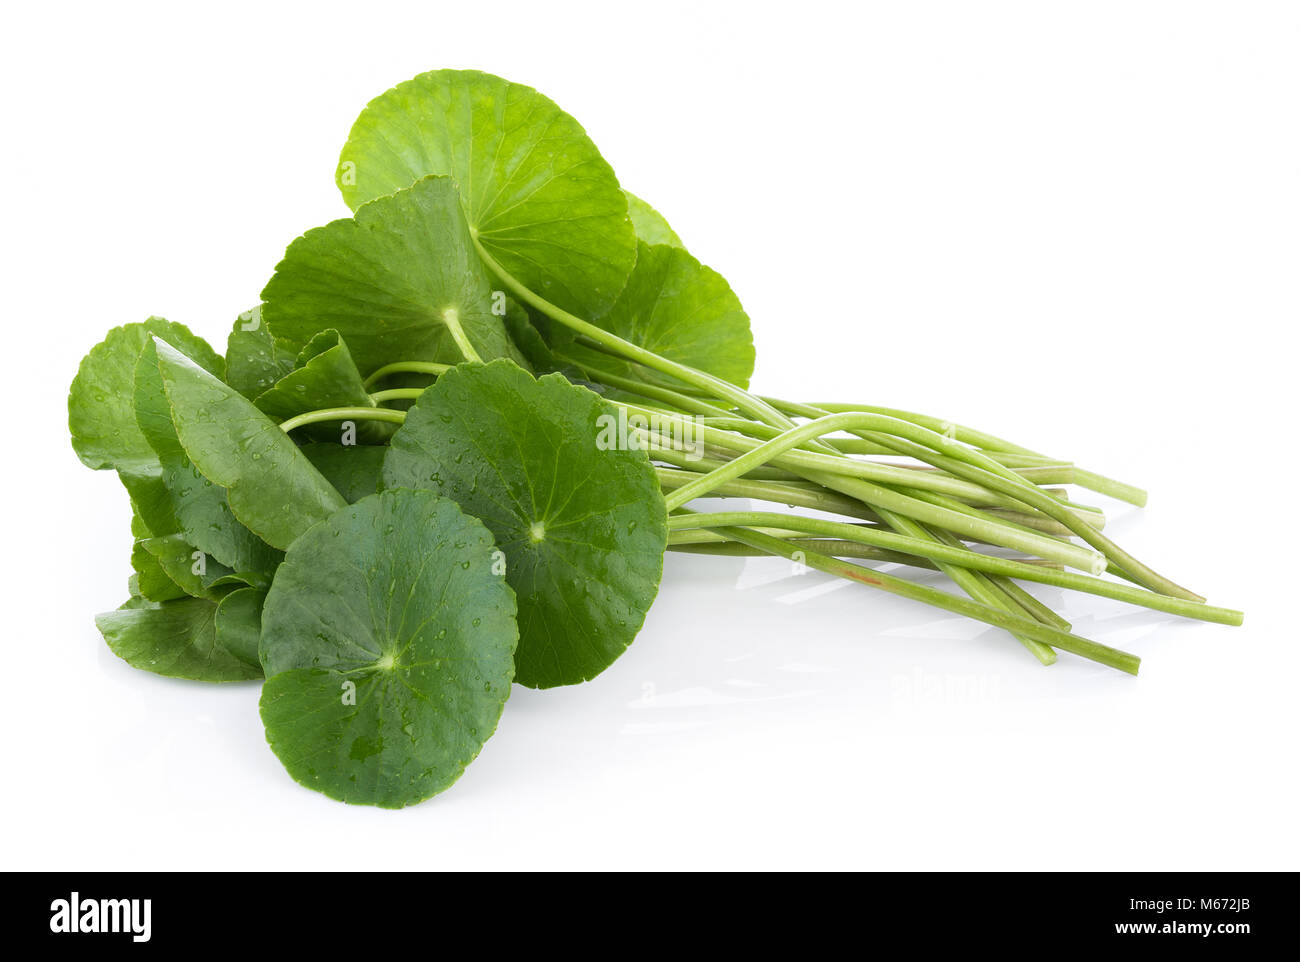 Closeup leaf of Gotu kola, Asiatic pennywort, asiatic leaf isolated on white background Stock Photo